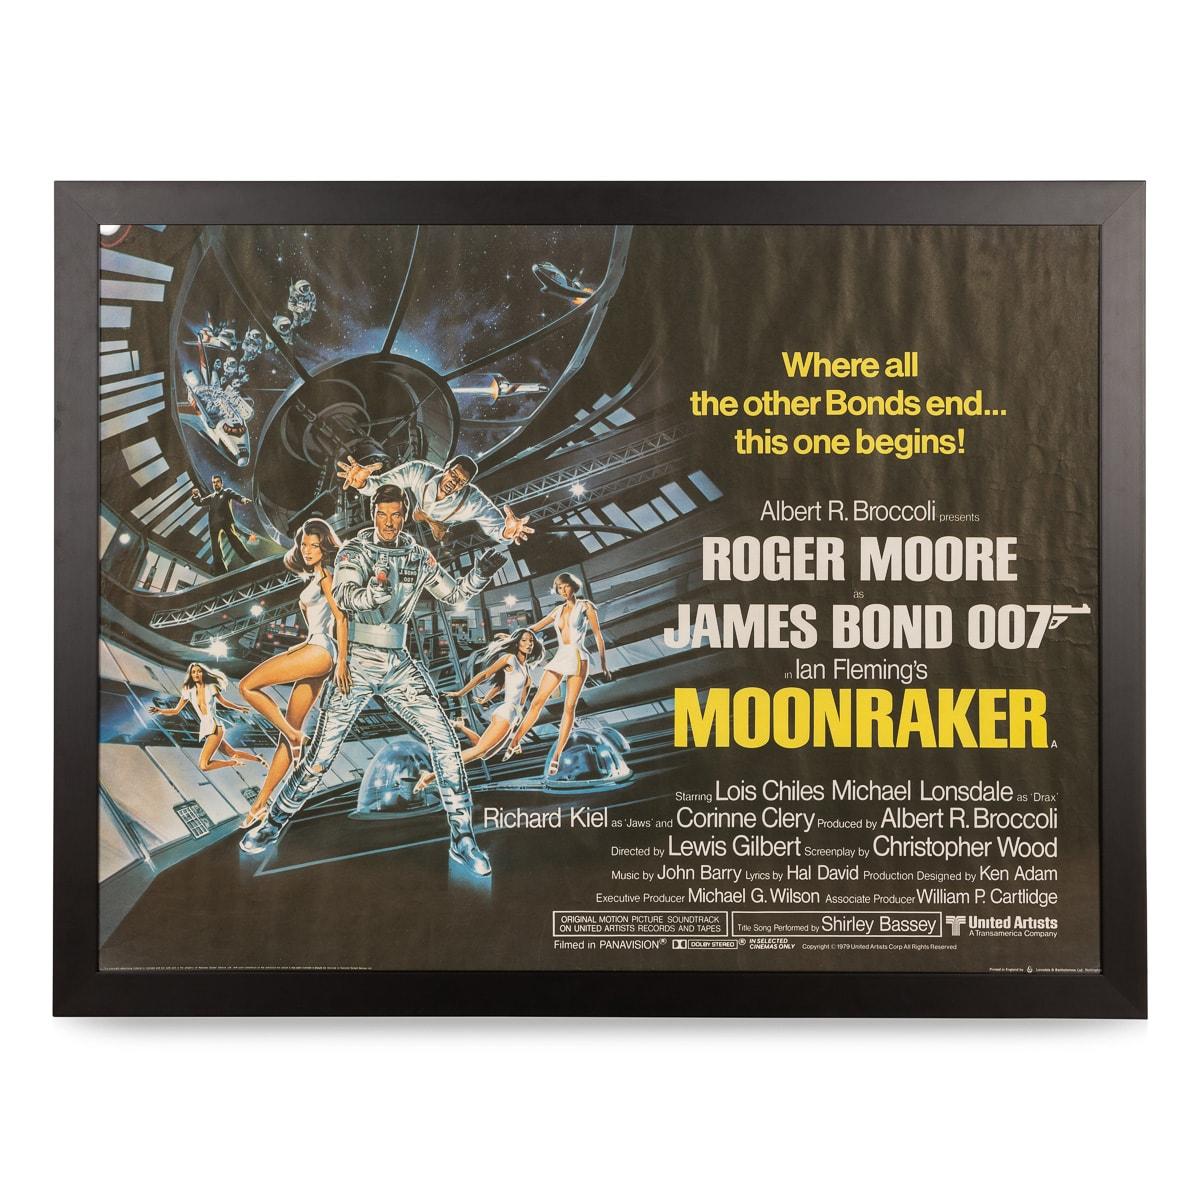 Ein sehr seltenes und originales britisches (UK) Vierfachplakat aus dem Blockbuster Moonraker (1979), signiert von Roger Moore. Dies war der elfte Film der James-Bond-Reihe, der von Eon Productions produziert wurde, und der vierte mit Roger Moore